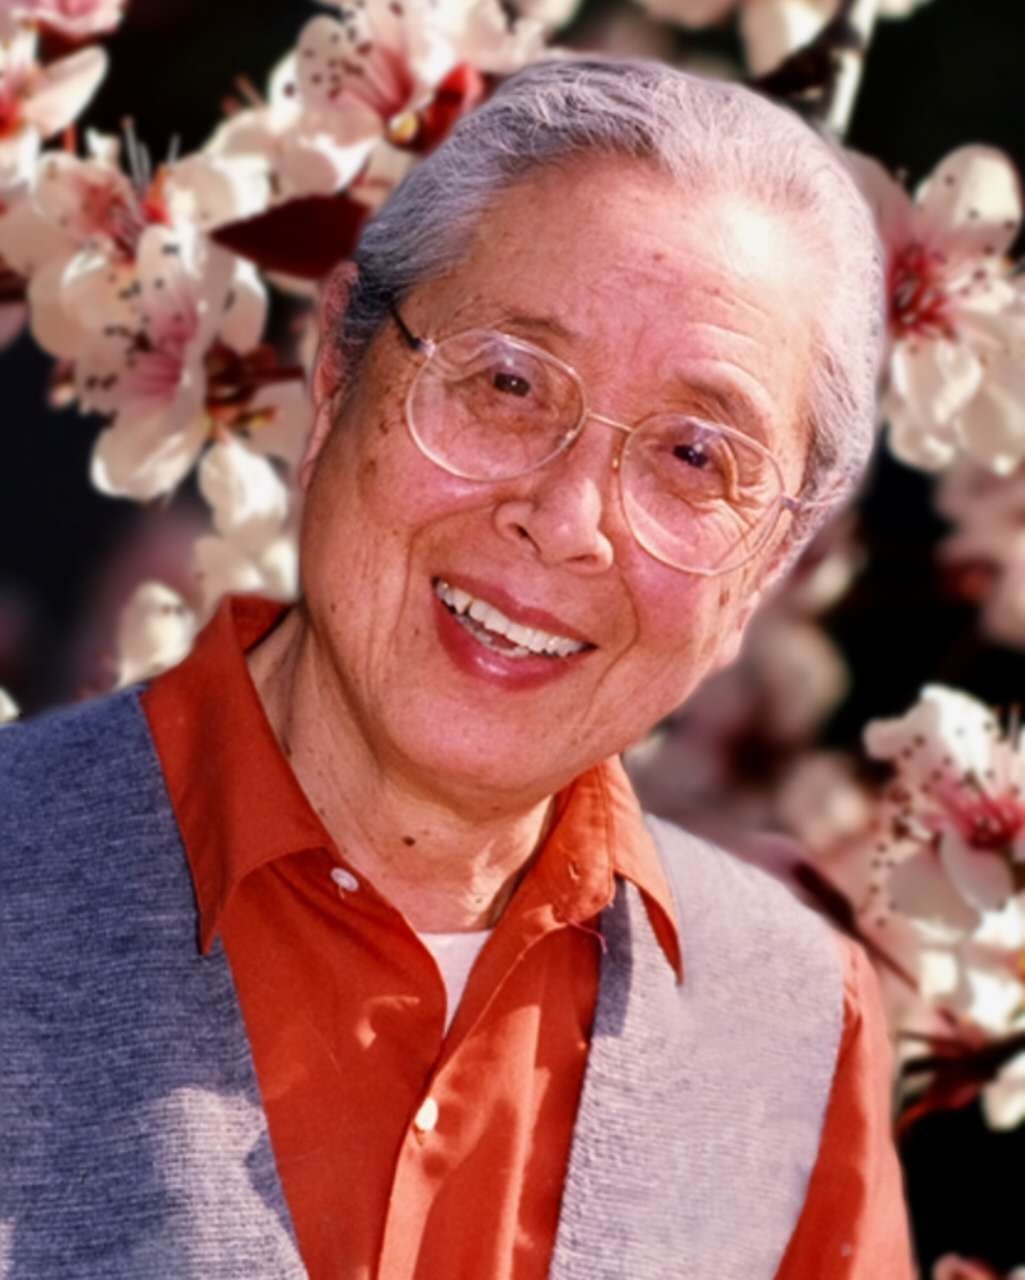 104岁 中国围产保健之母 严仁英教授辞世:从临